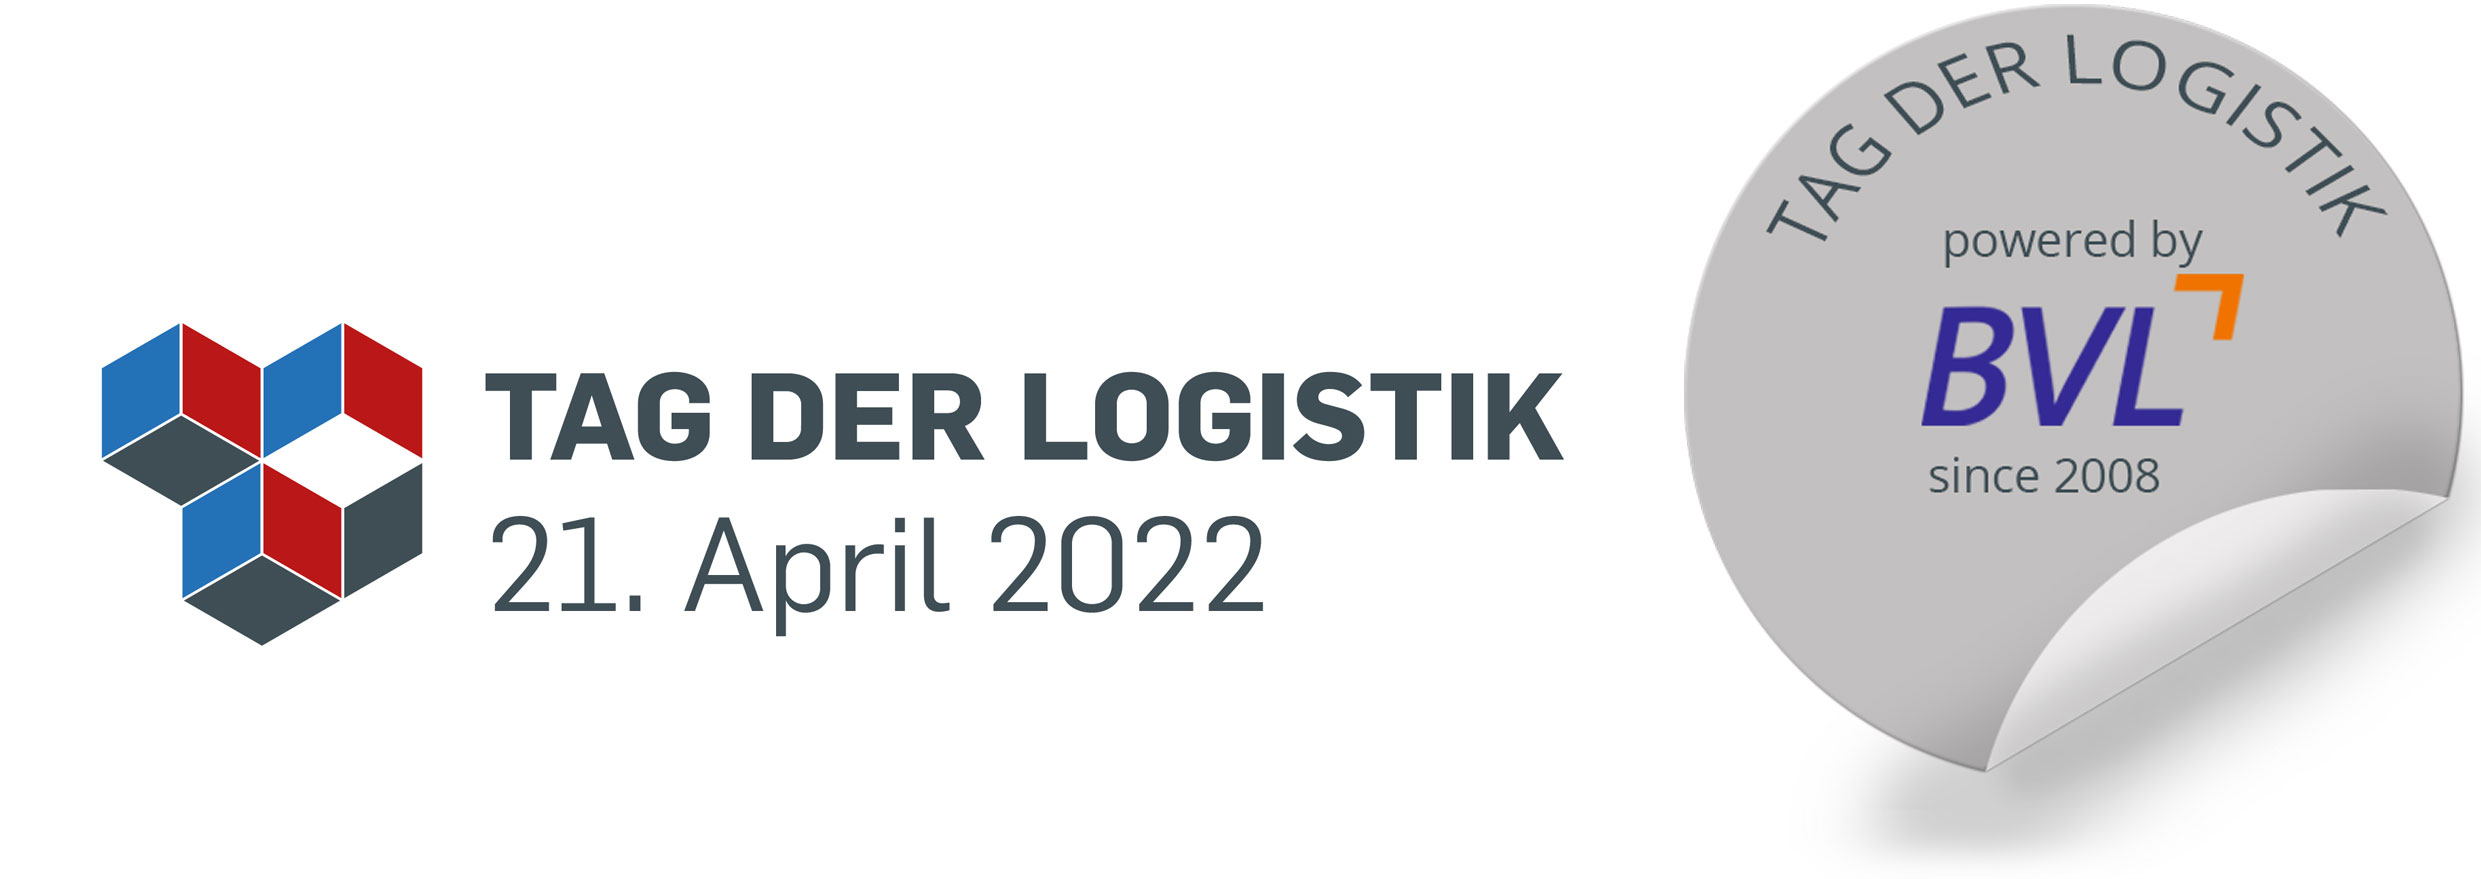 Tag der Logistik 2018